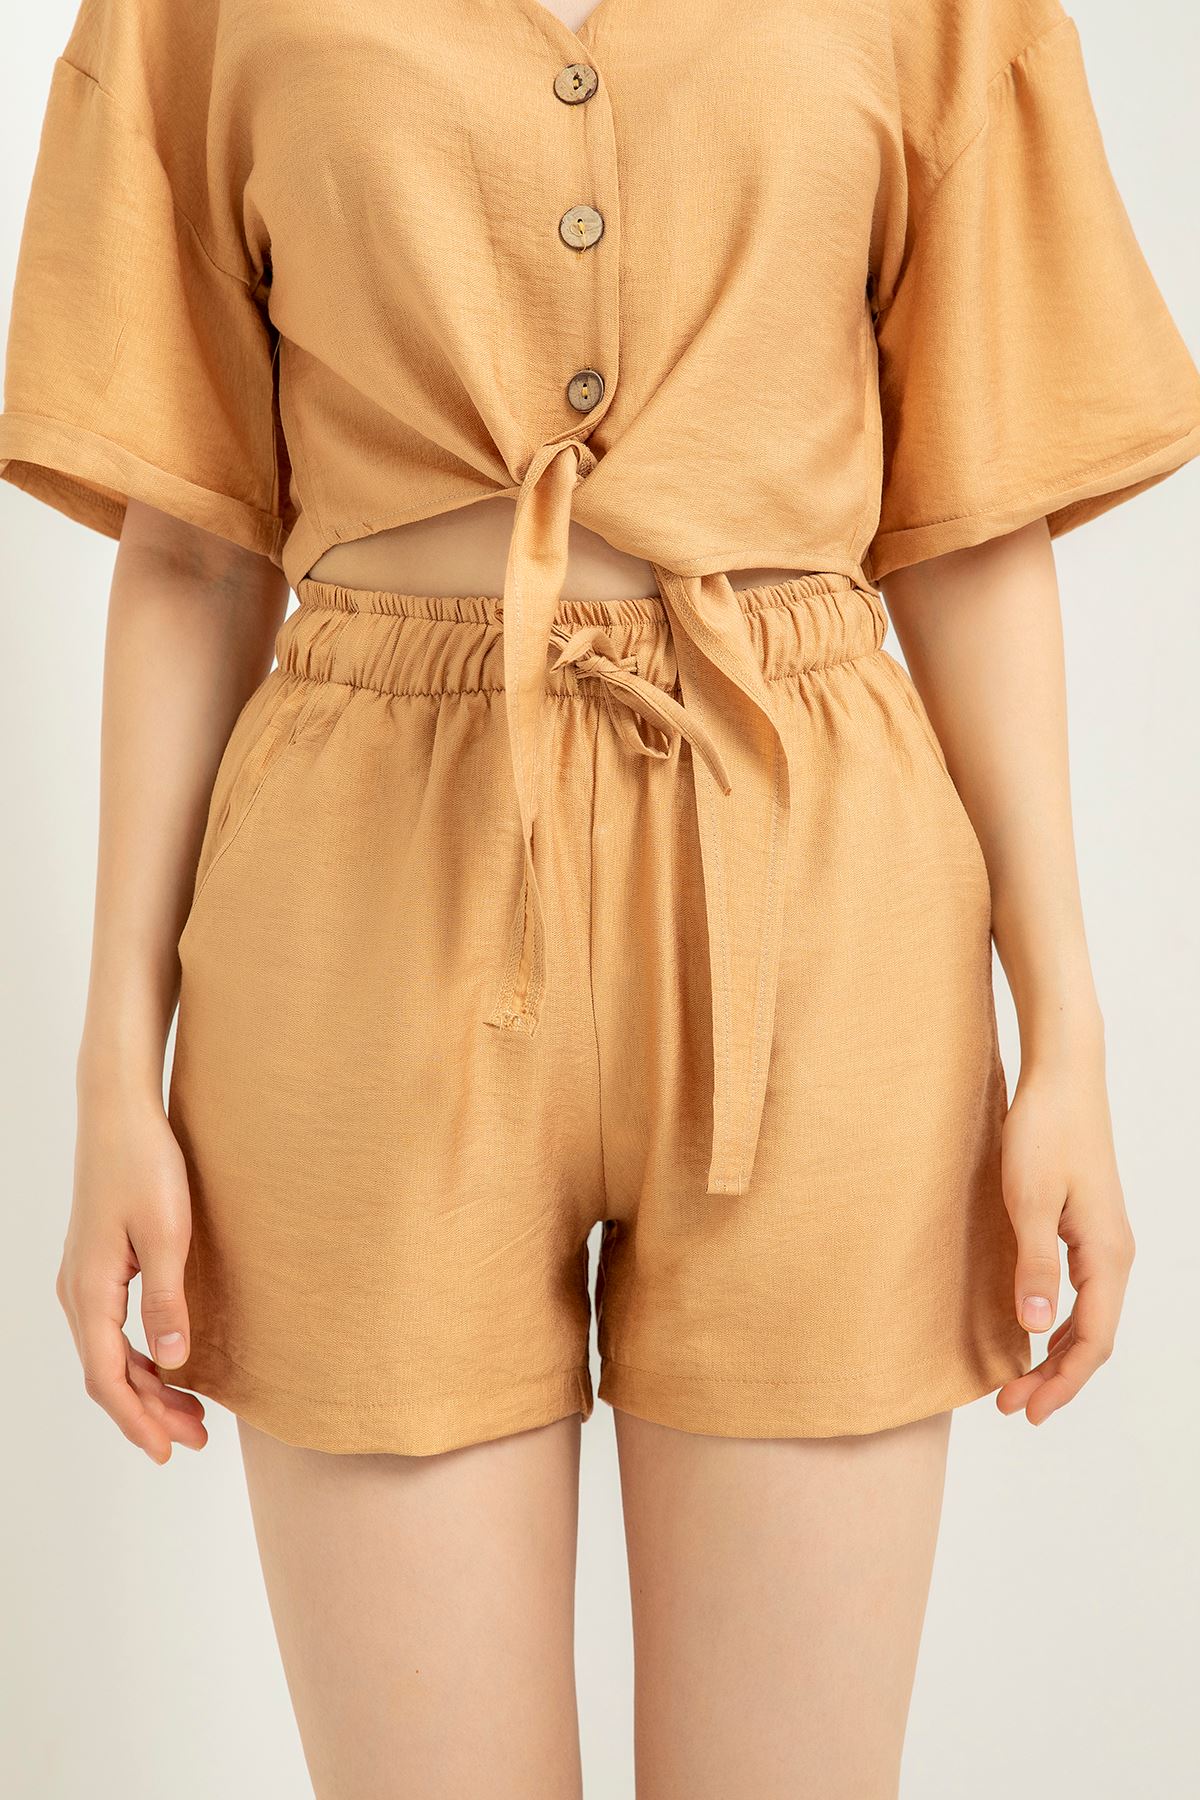 Linen Fabric Short Comfy Fit Elastic Waist Women Shorts - Light Brown